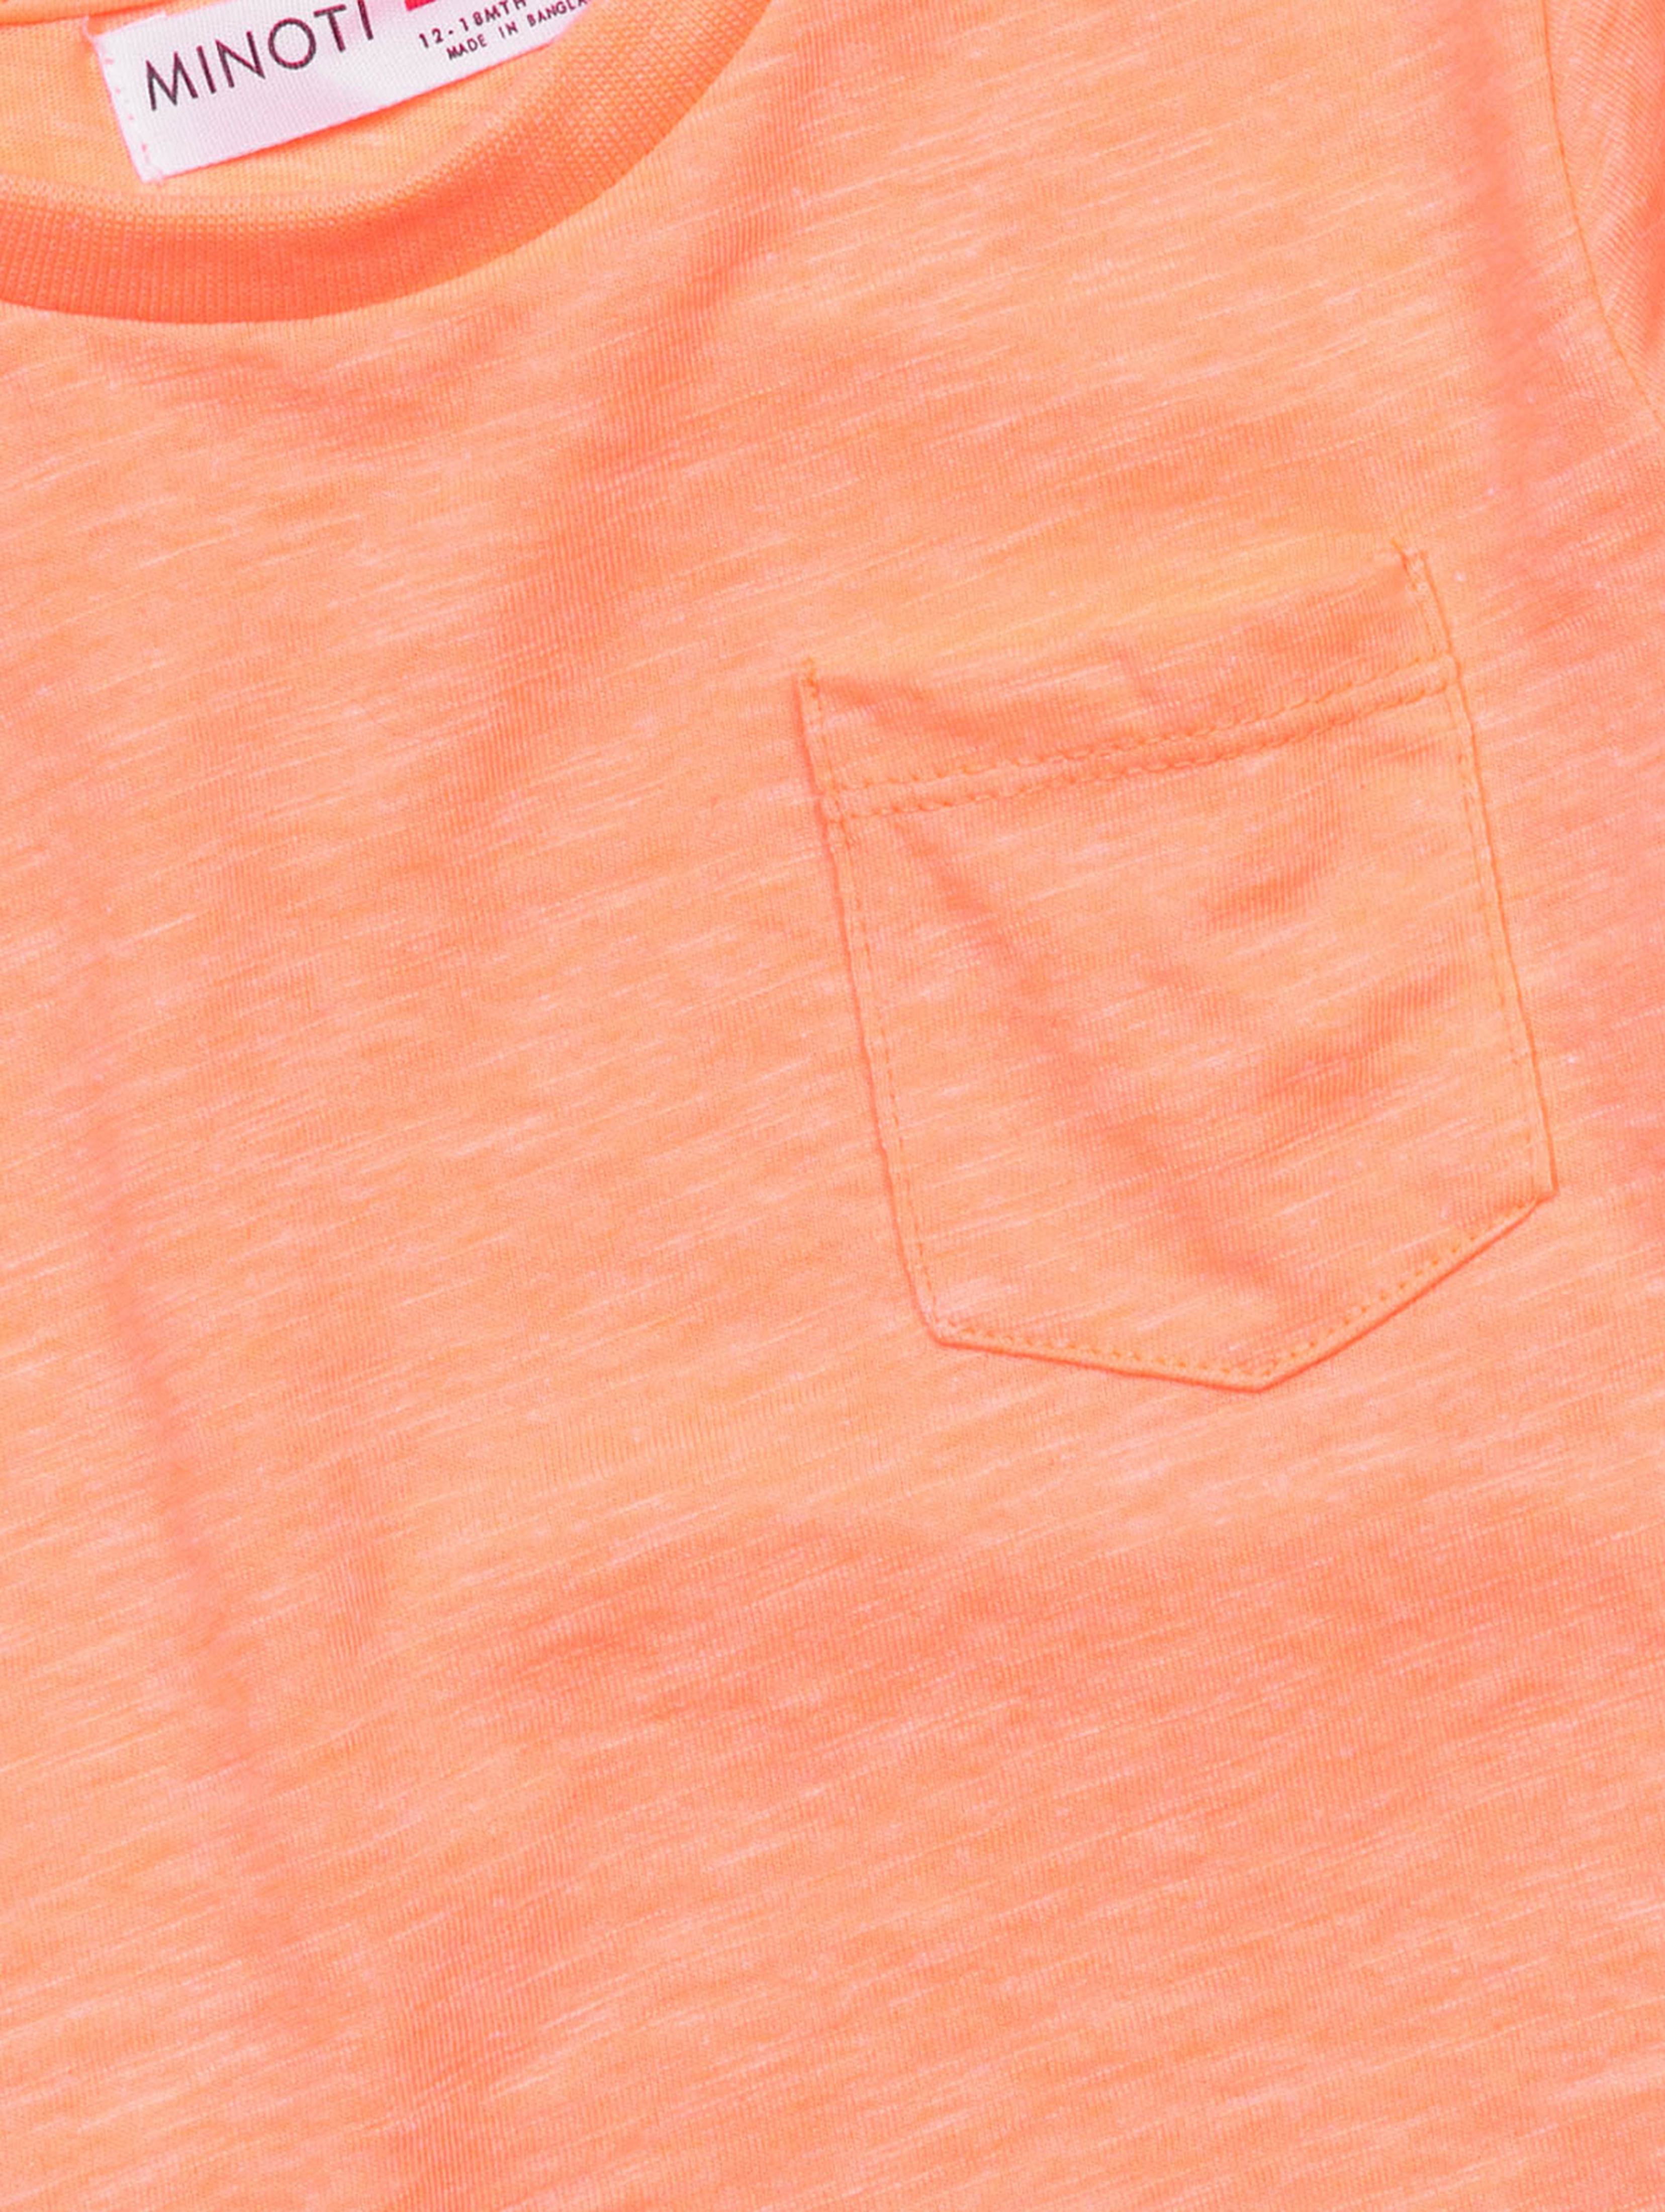 Pomarańczowy t-shirt dla niemowlaka z kieszonką